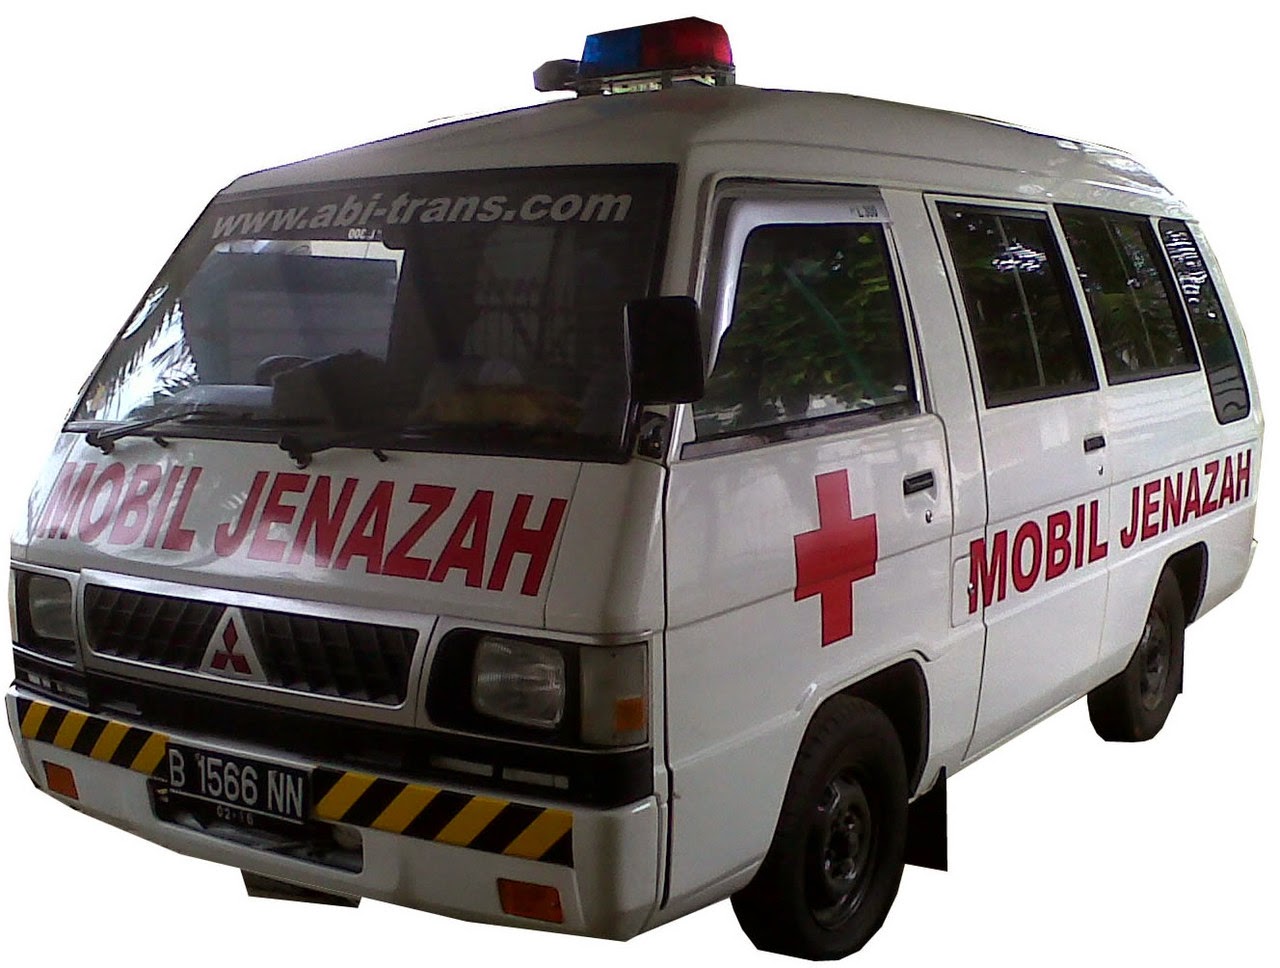  Animasi Mobil Ambulance  Bergerak Terlengkap Dan Terupdate 